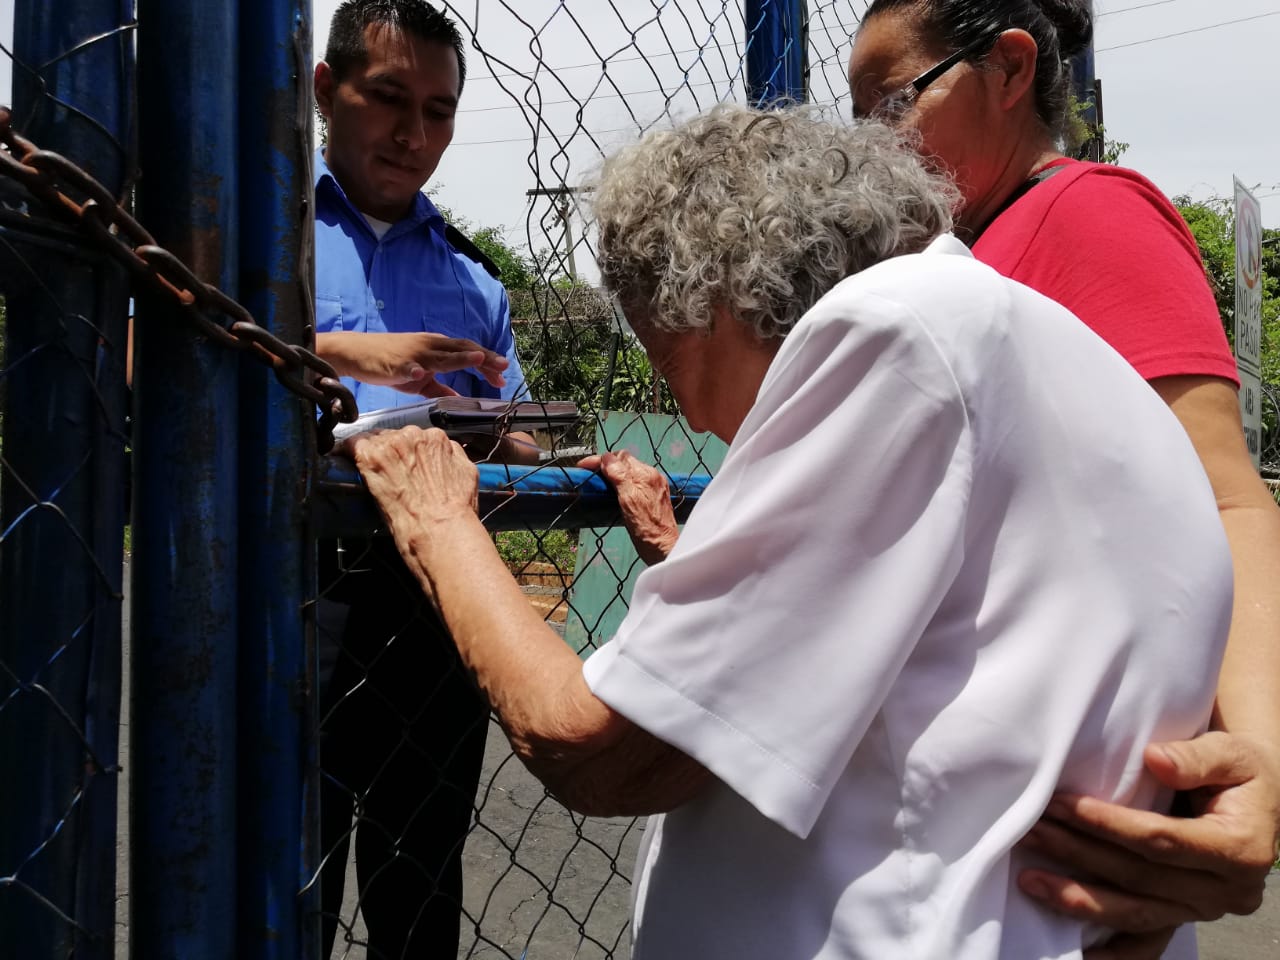 Madres continúan sufriendo las detenciones ilegales de sus hijos. Foto: A. Navarro